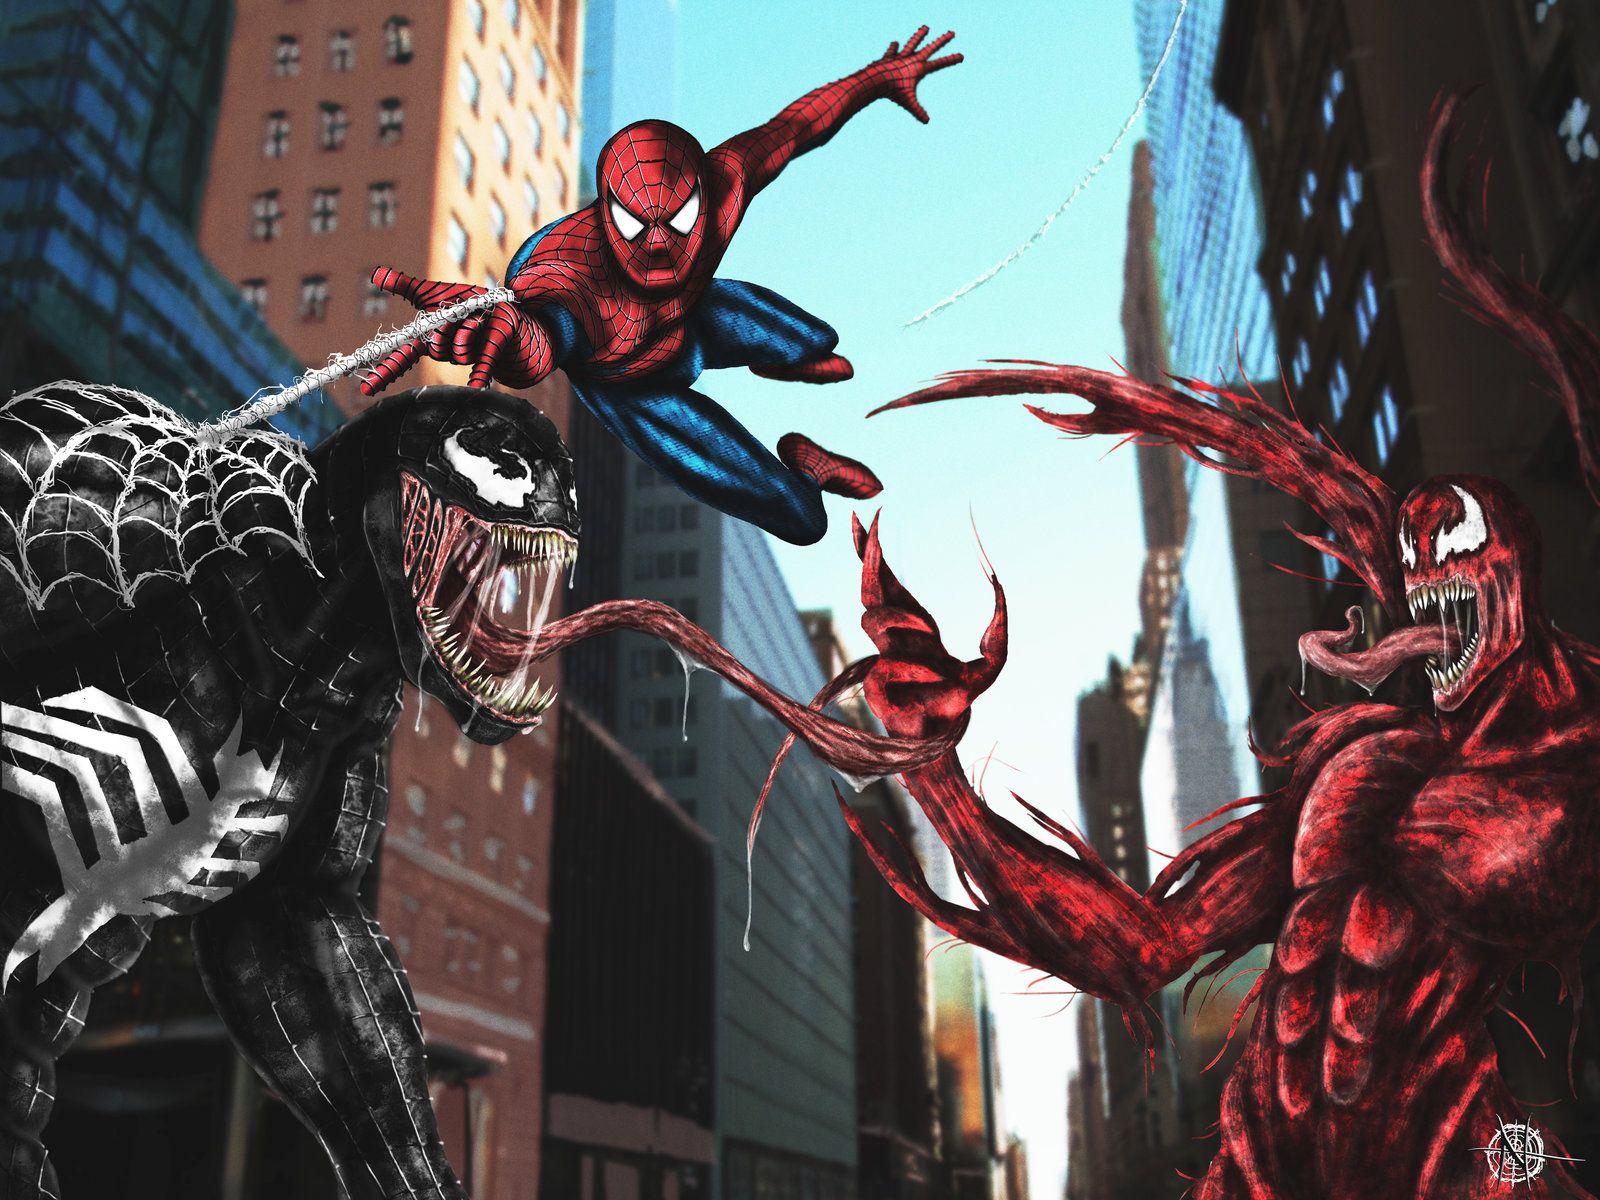 Spiderman vs. Venom vs. Carnage